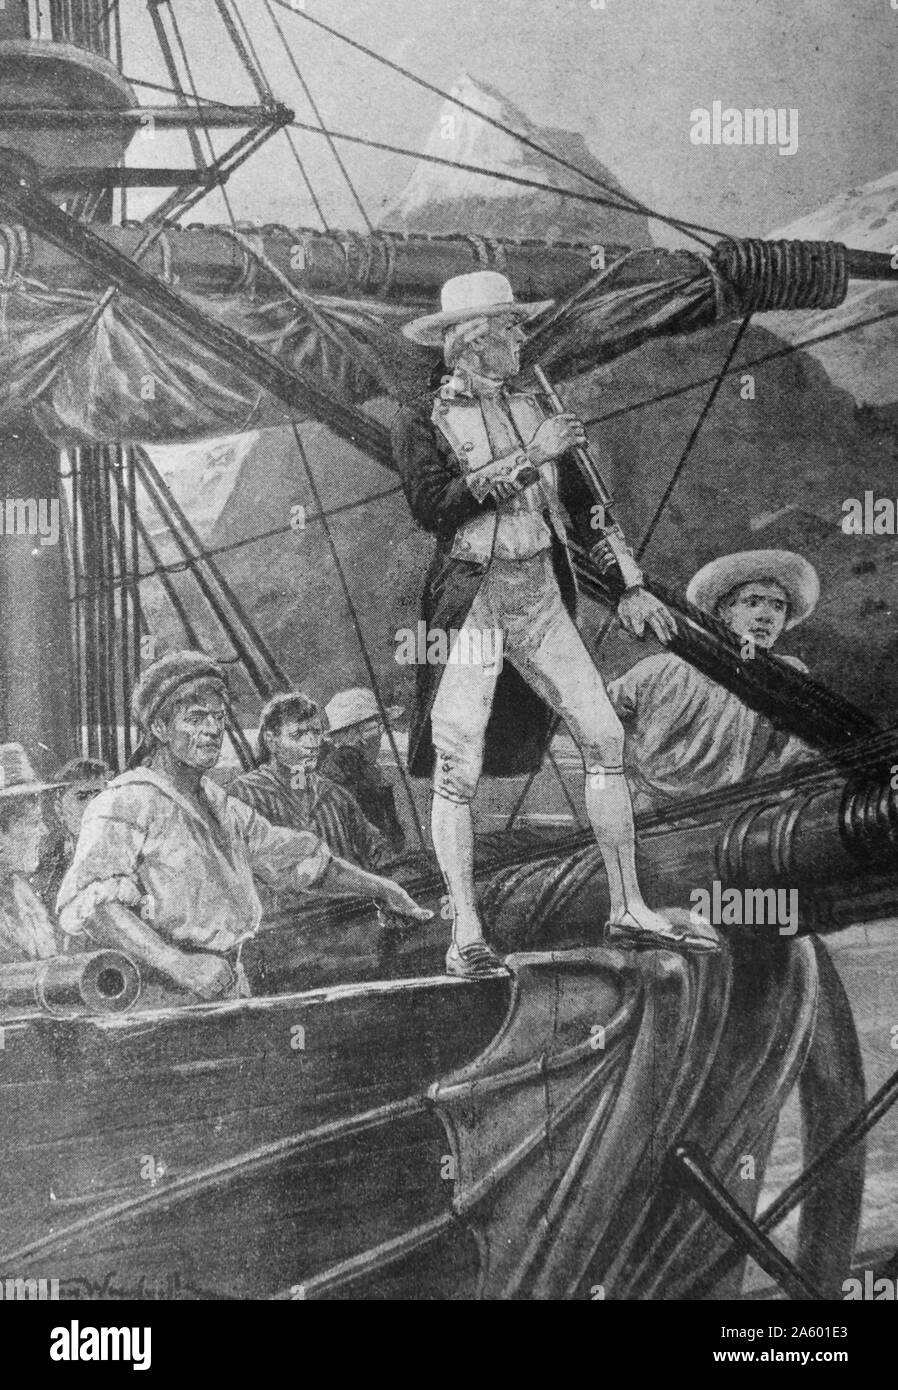 Captain Cook-Entdeckungen in der Südsee. Captain James Cook drei Reisen führten ihn nach Neuseeland, Australien, Pazifik-Inseln und Hawaii. Stockfoto